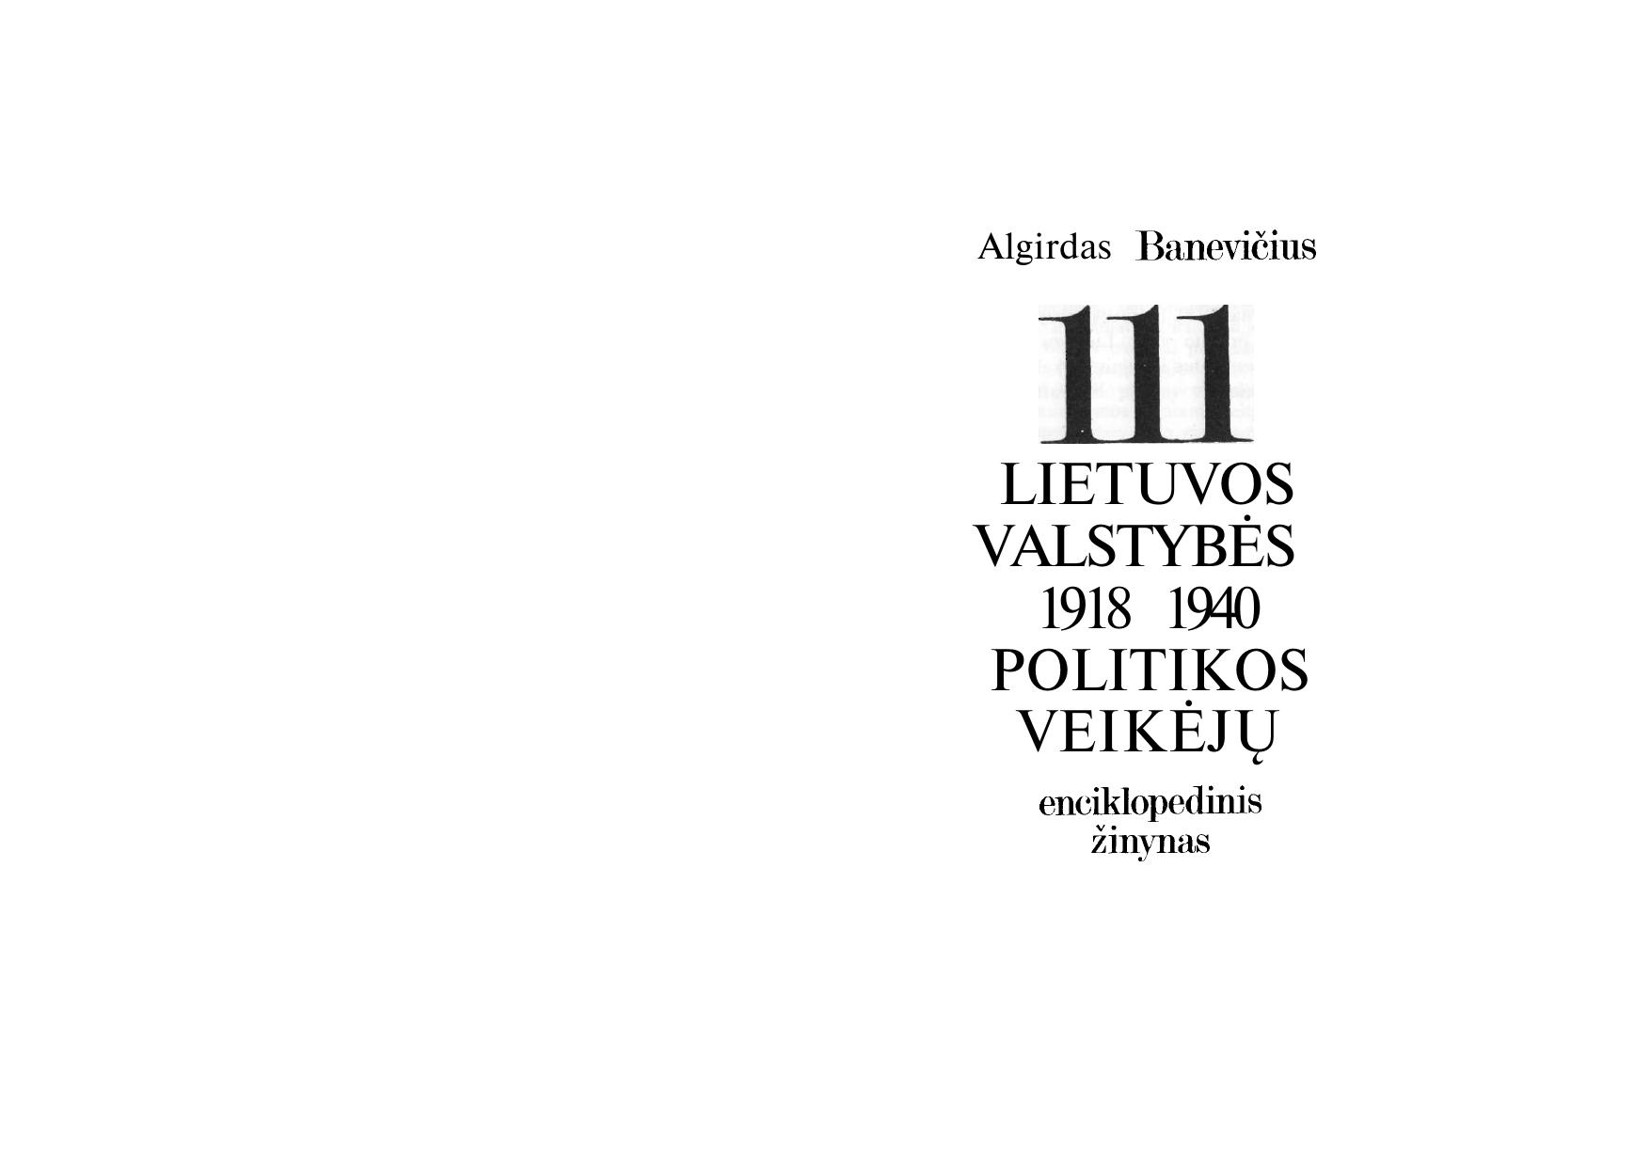 Algirdas.Banevicius.-.111.Lietuvos.valstybes.politikos.veikeju.1918-1940.1991.LT